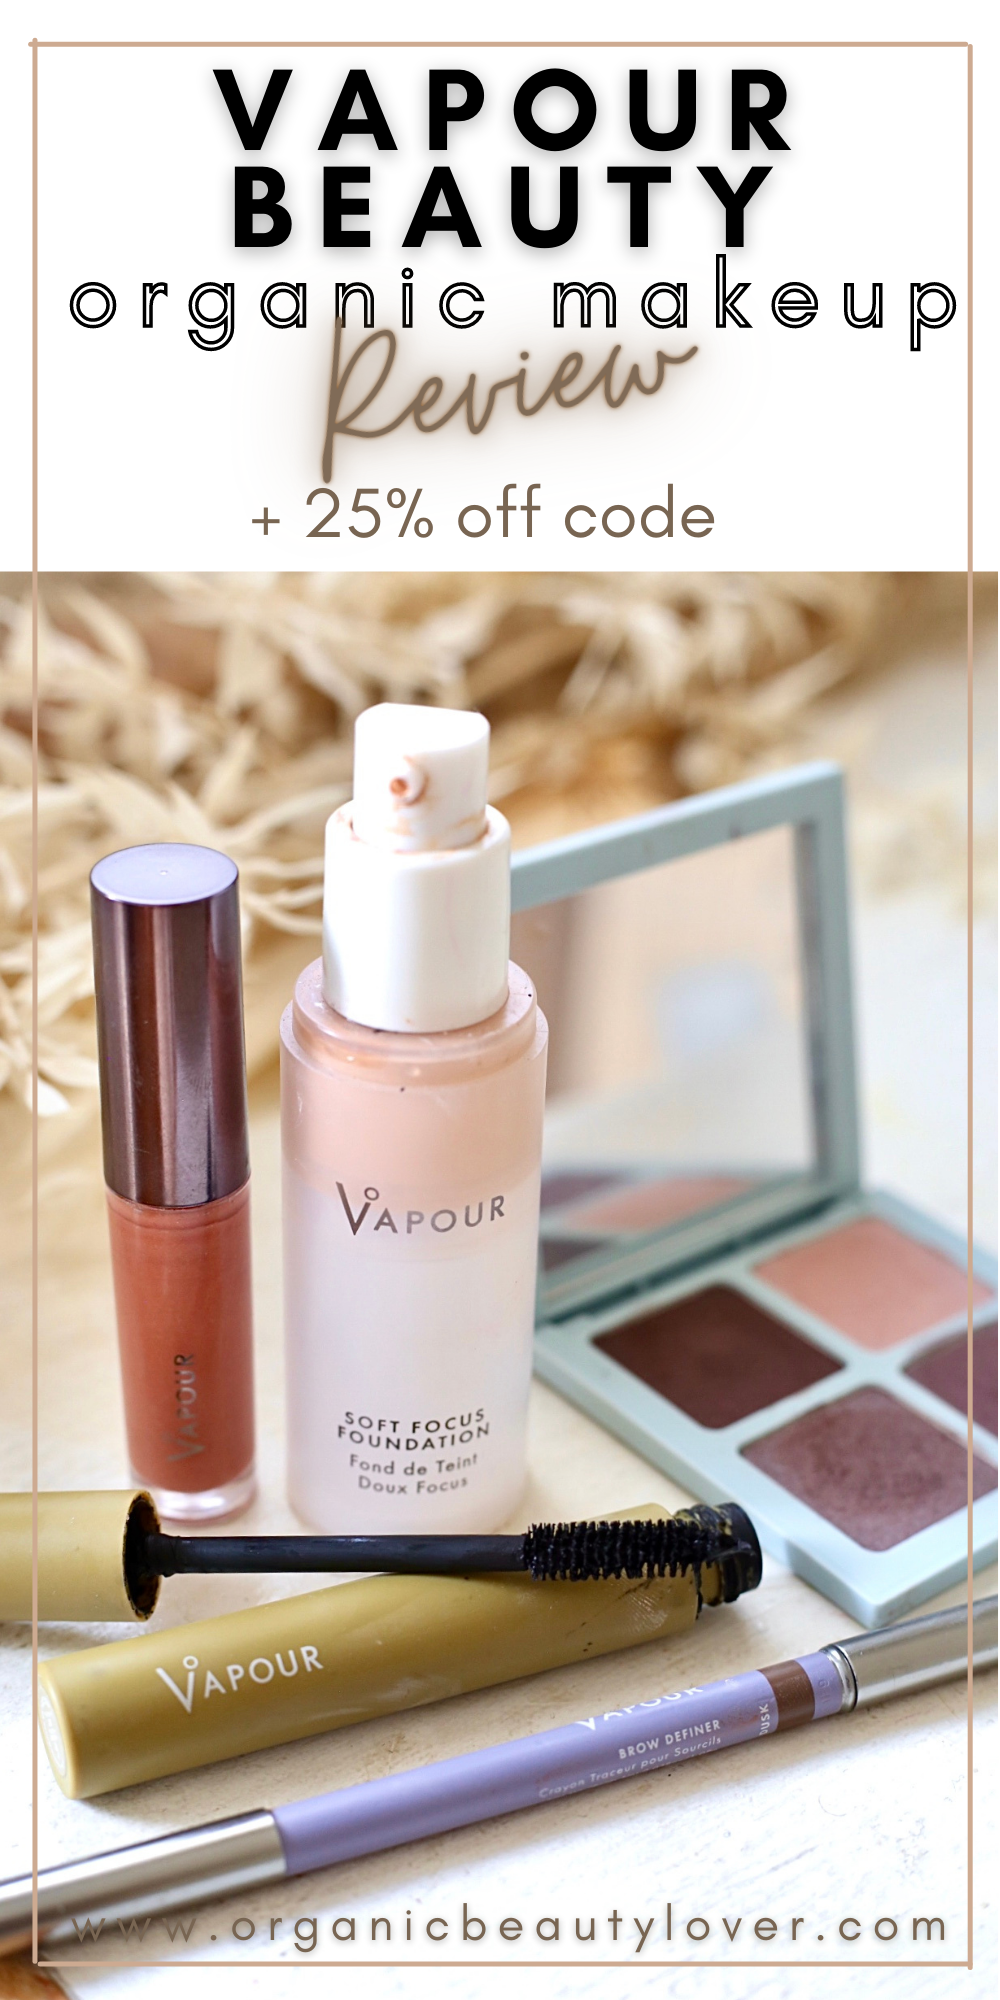 Vapour beauty makeup review